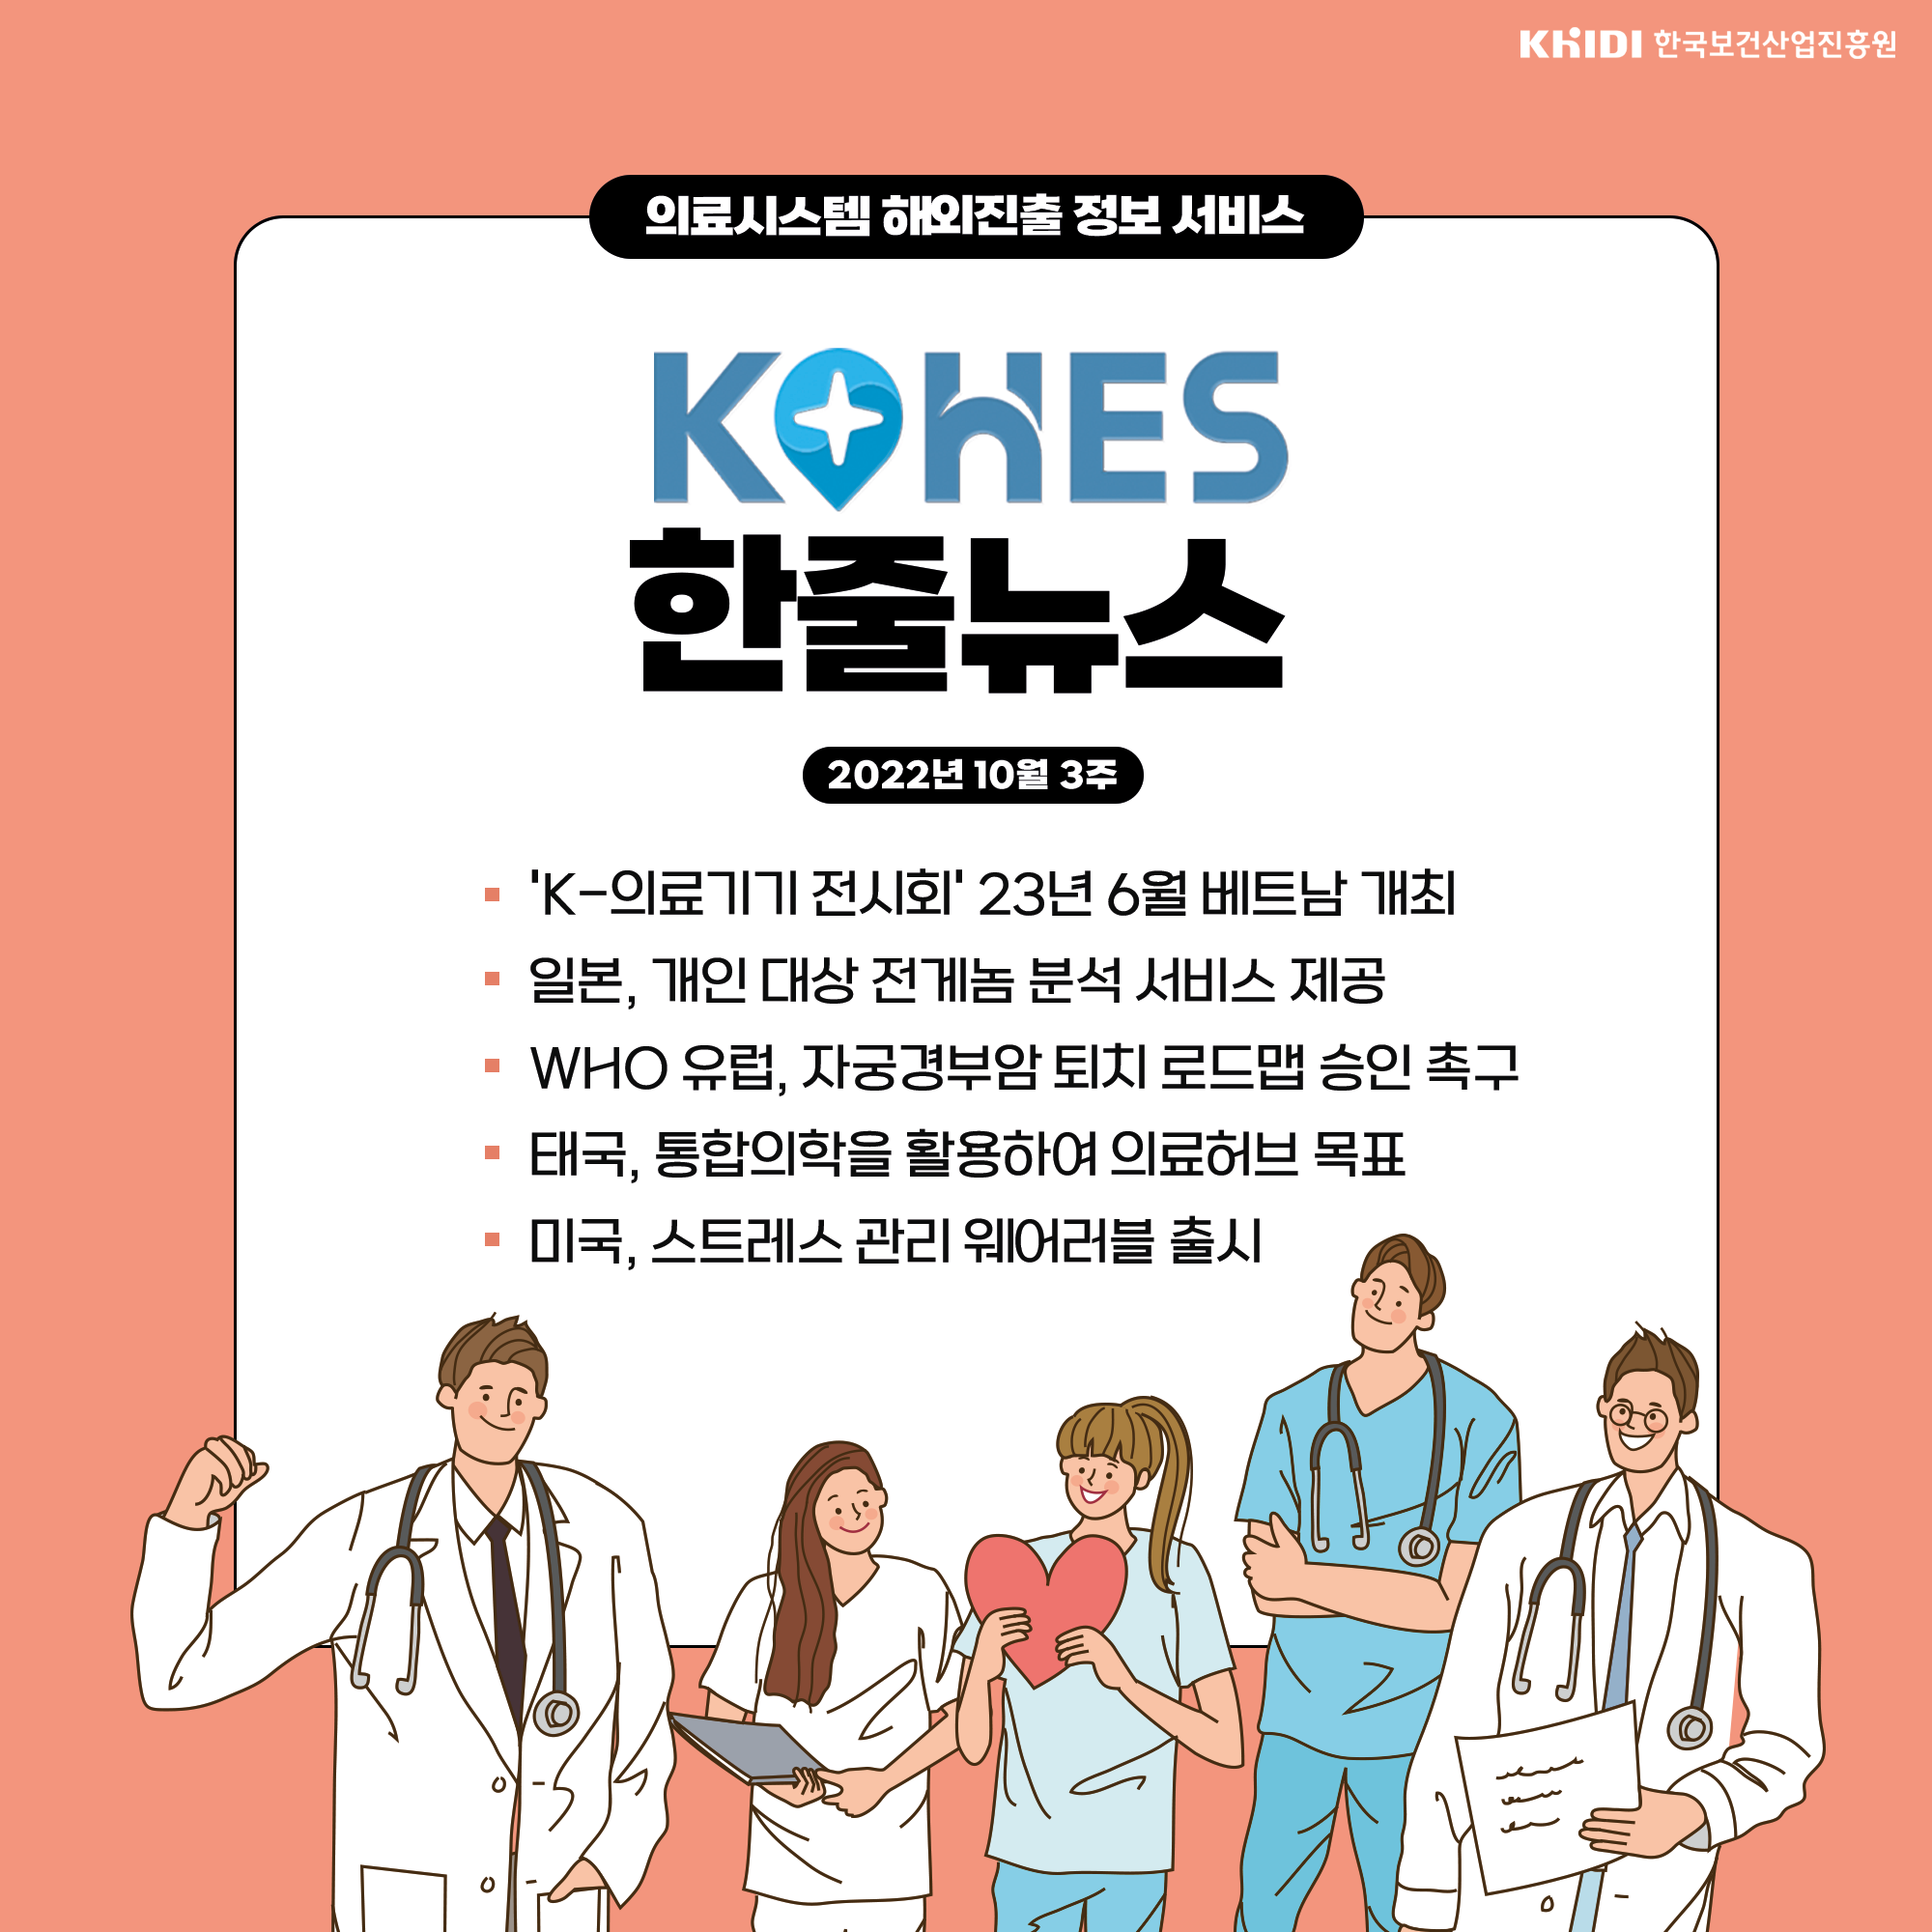 KOHES 한줄뉴스( 'K-의료기기 전시회' 23년 6월 베트남 개최 등)